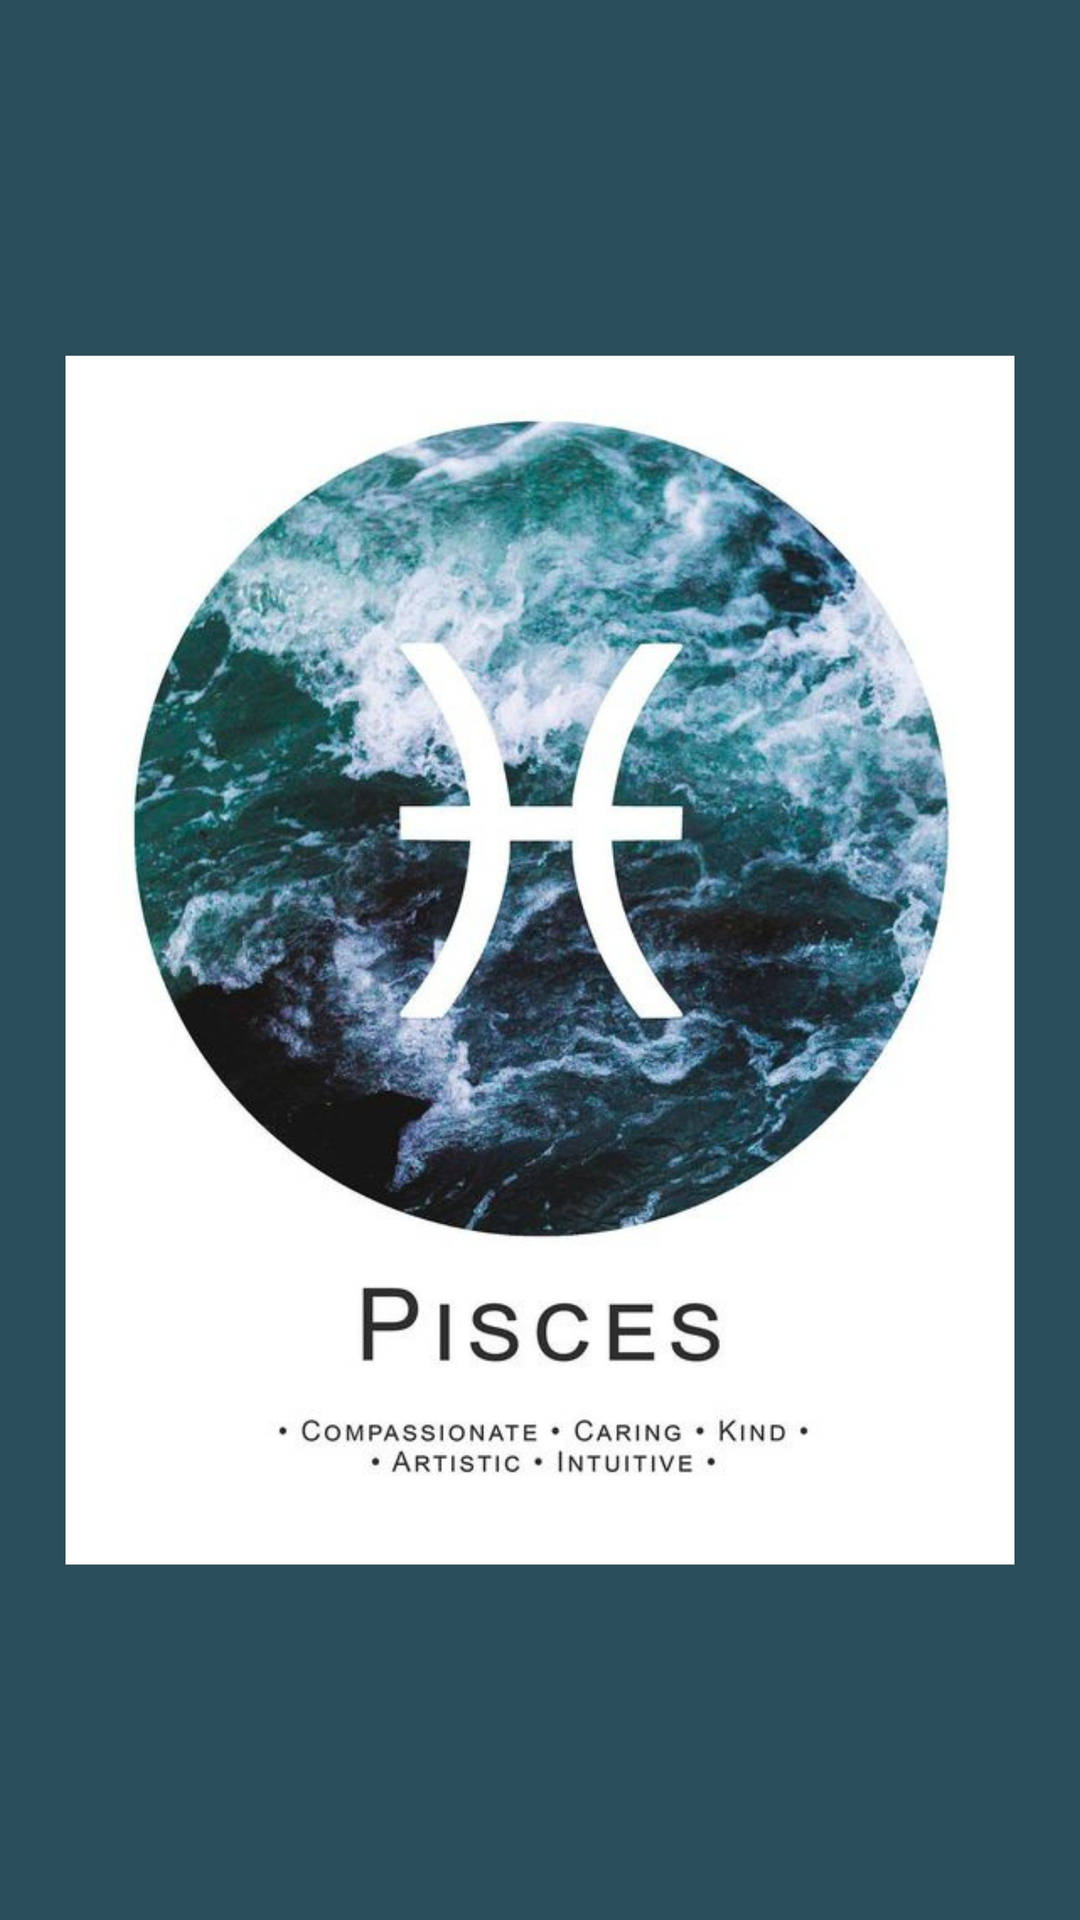 Pisces Ocean Symbol And Text Wallpaper